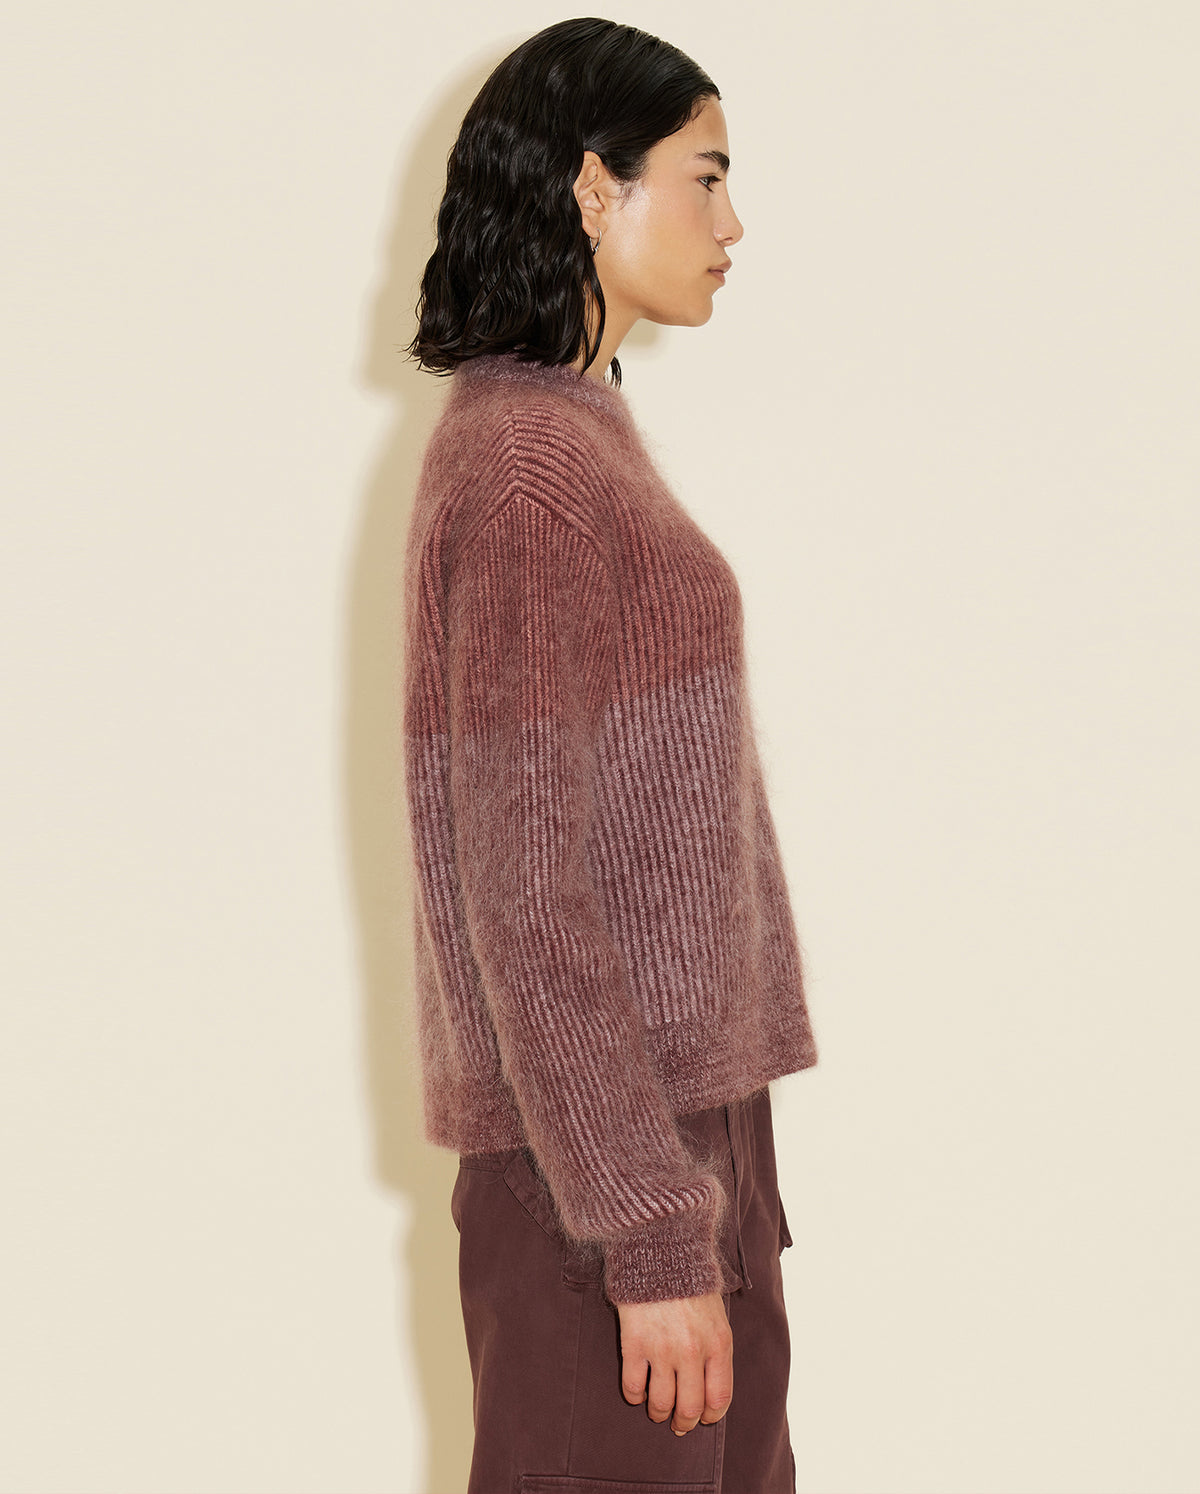 Anja Knit Sweater